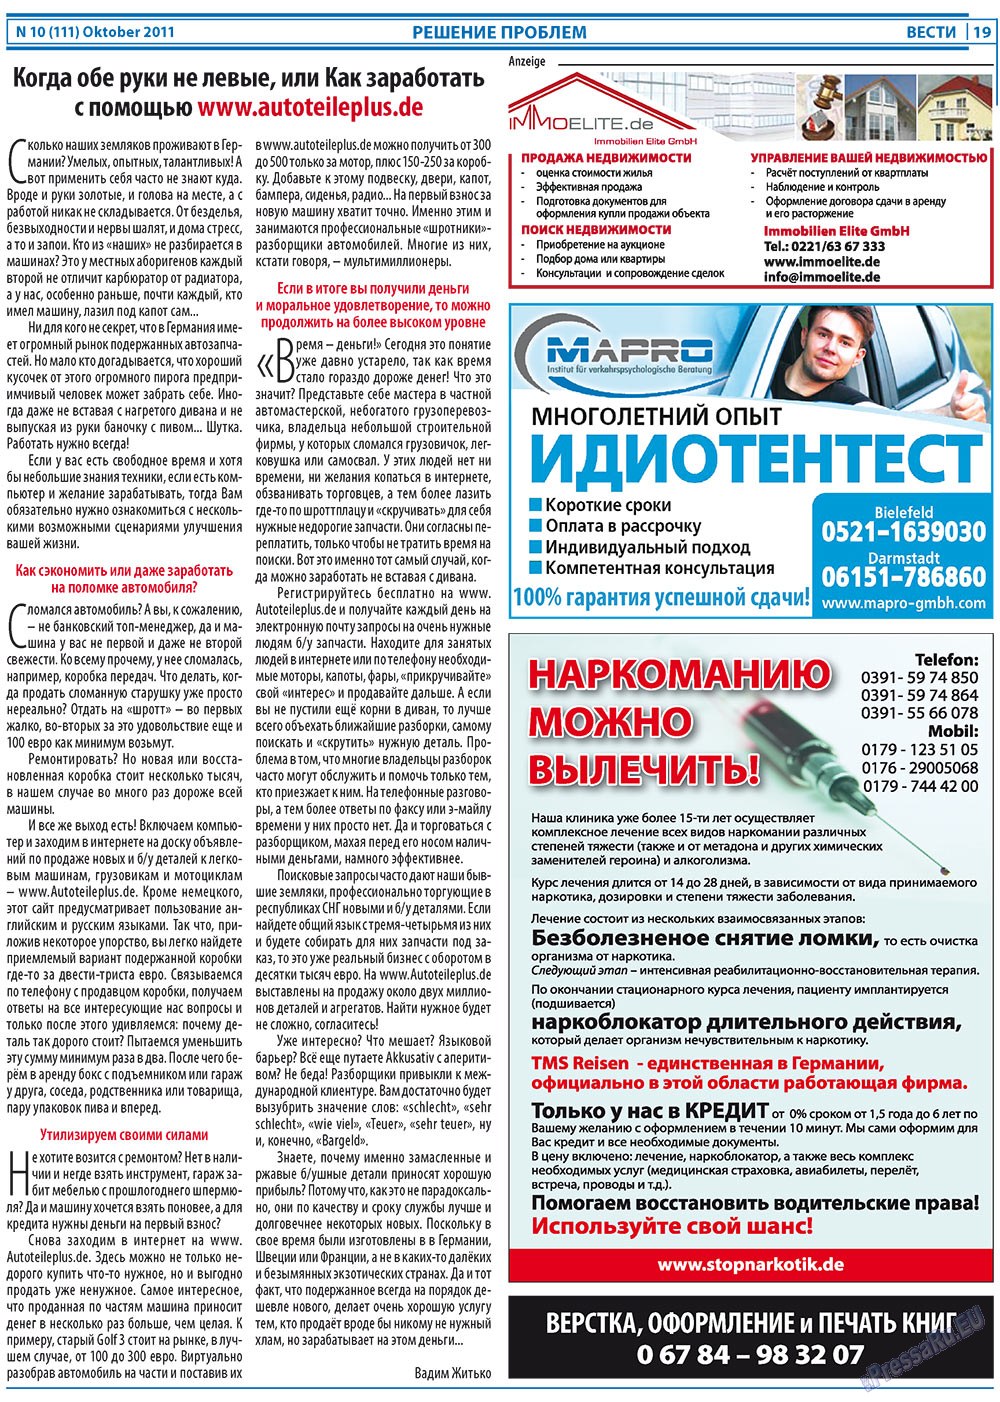 Вести, газета. 2011 №10 стр.19